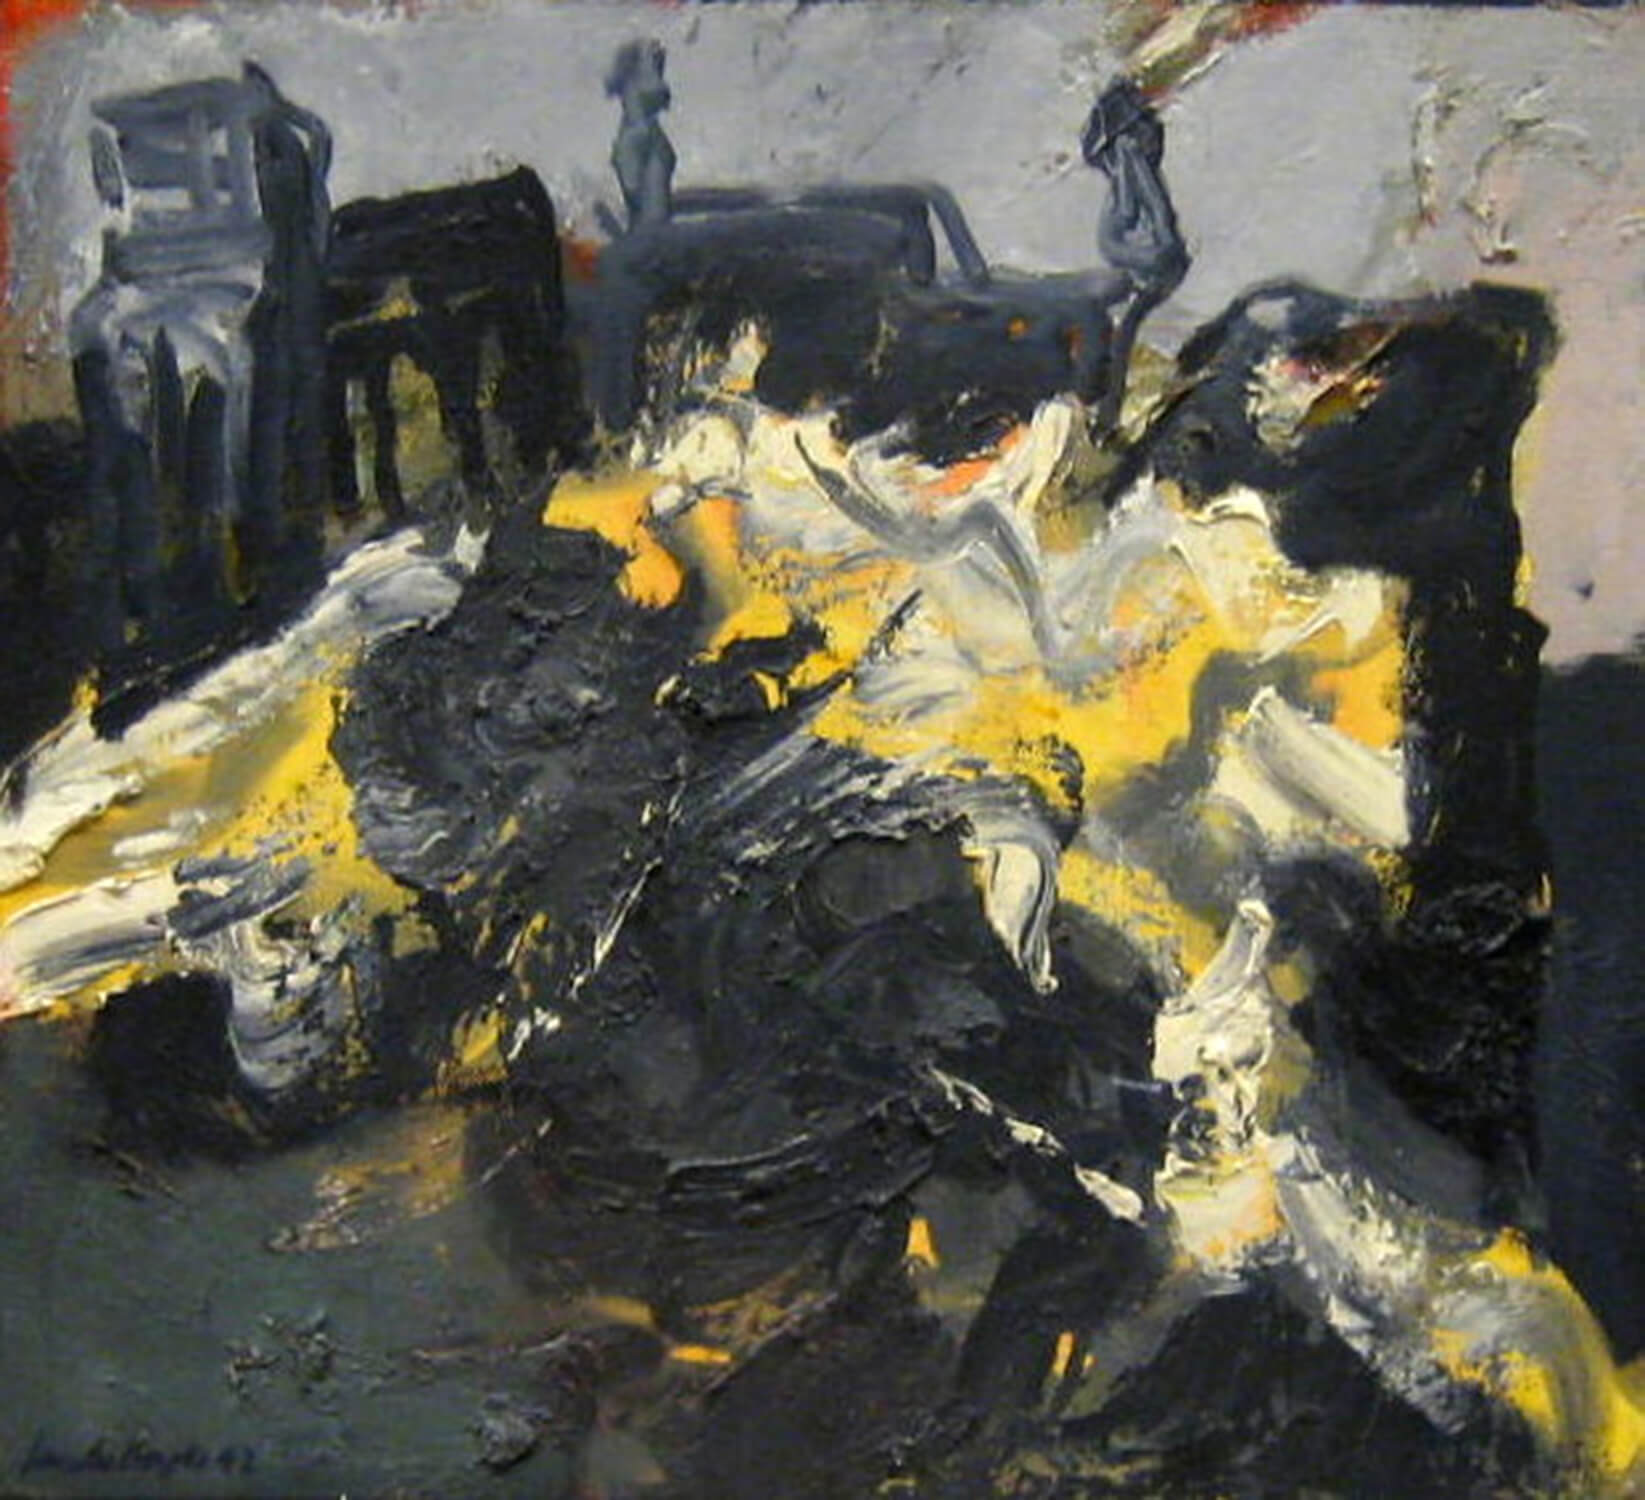 Jacobo Borges, Rains I, 1992, oil on canvas, 41 x 45 cm